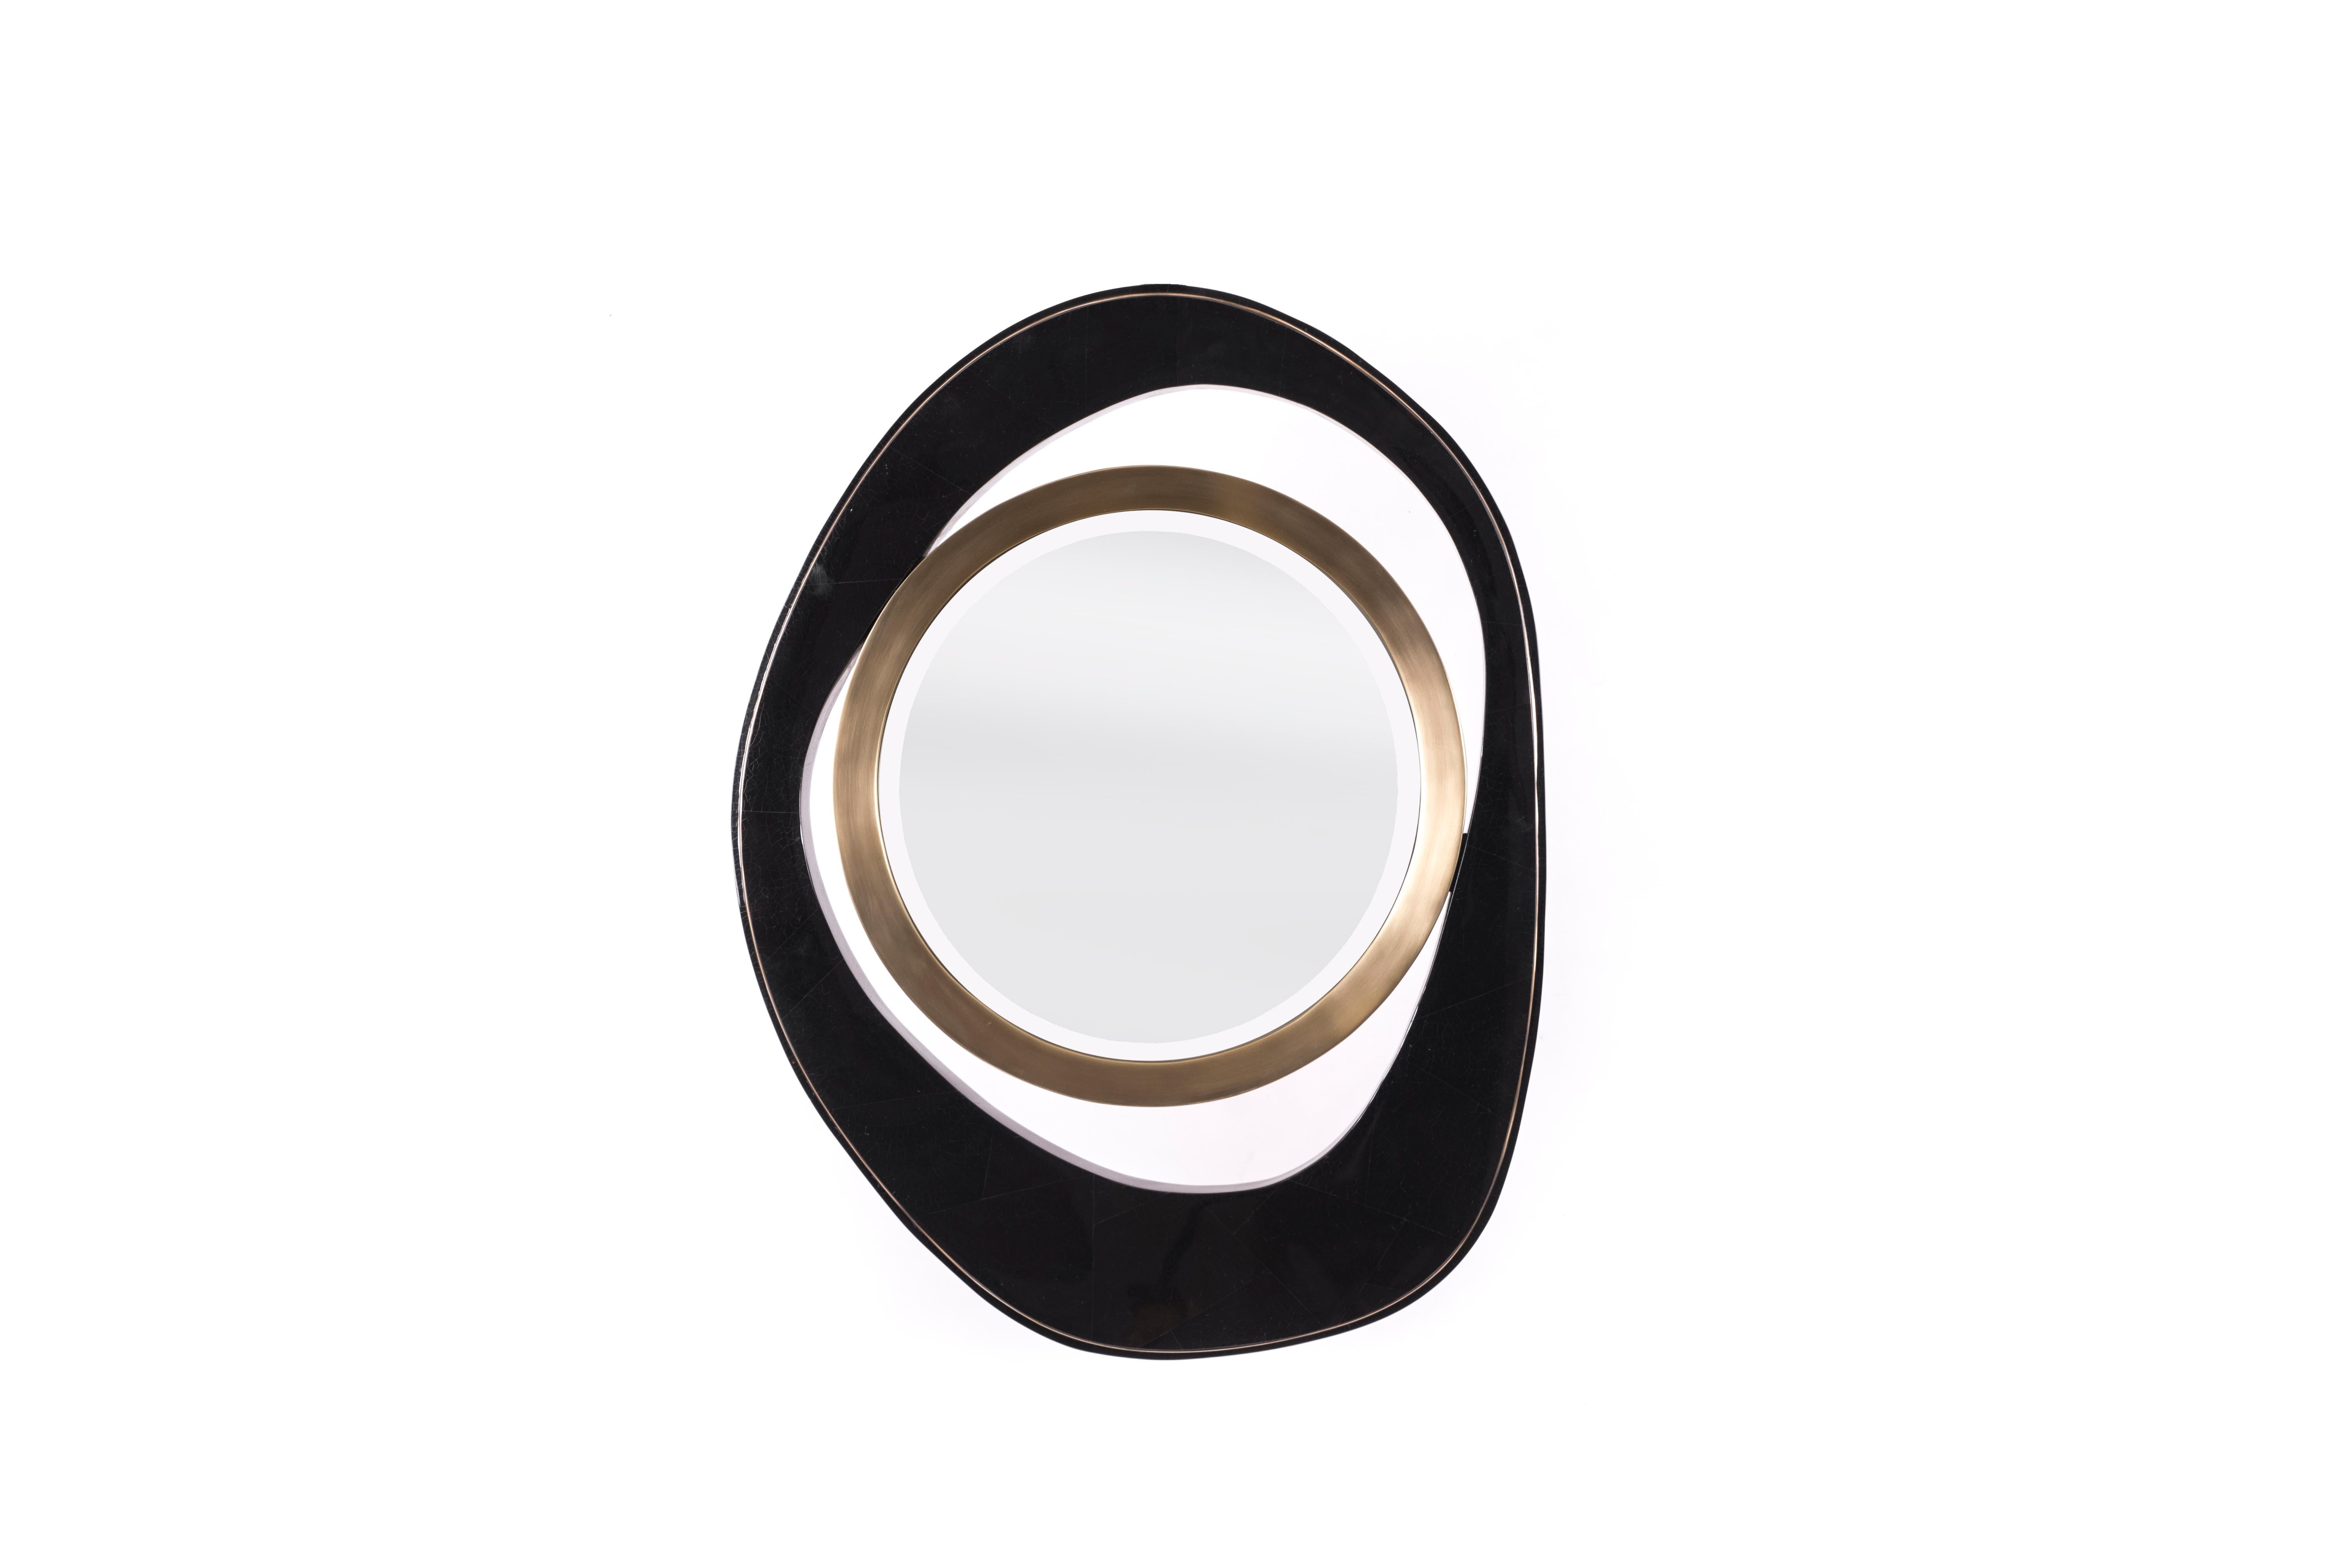 Le miroir paon en coquille de stylo noire et détails en laiton bronze-patine s'inspire des tables basses gigognes emblématiques de R&Y Augousti. C'est la pièce d'accent parfaite pour habiller n'importe quel mur. La coquille noire présente des